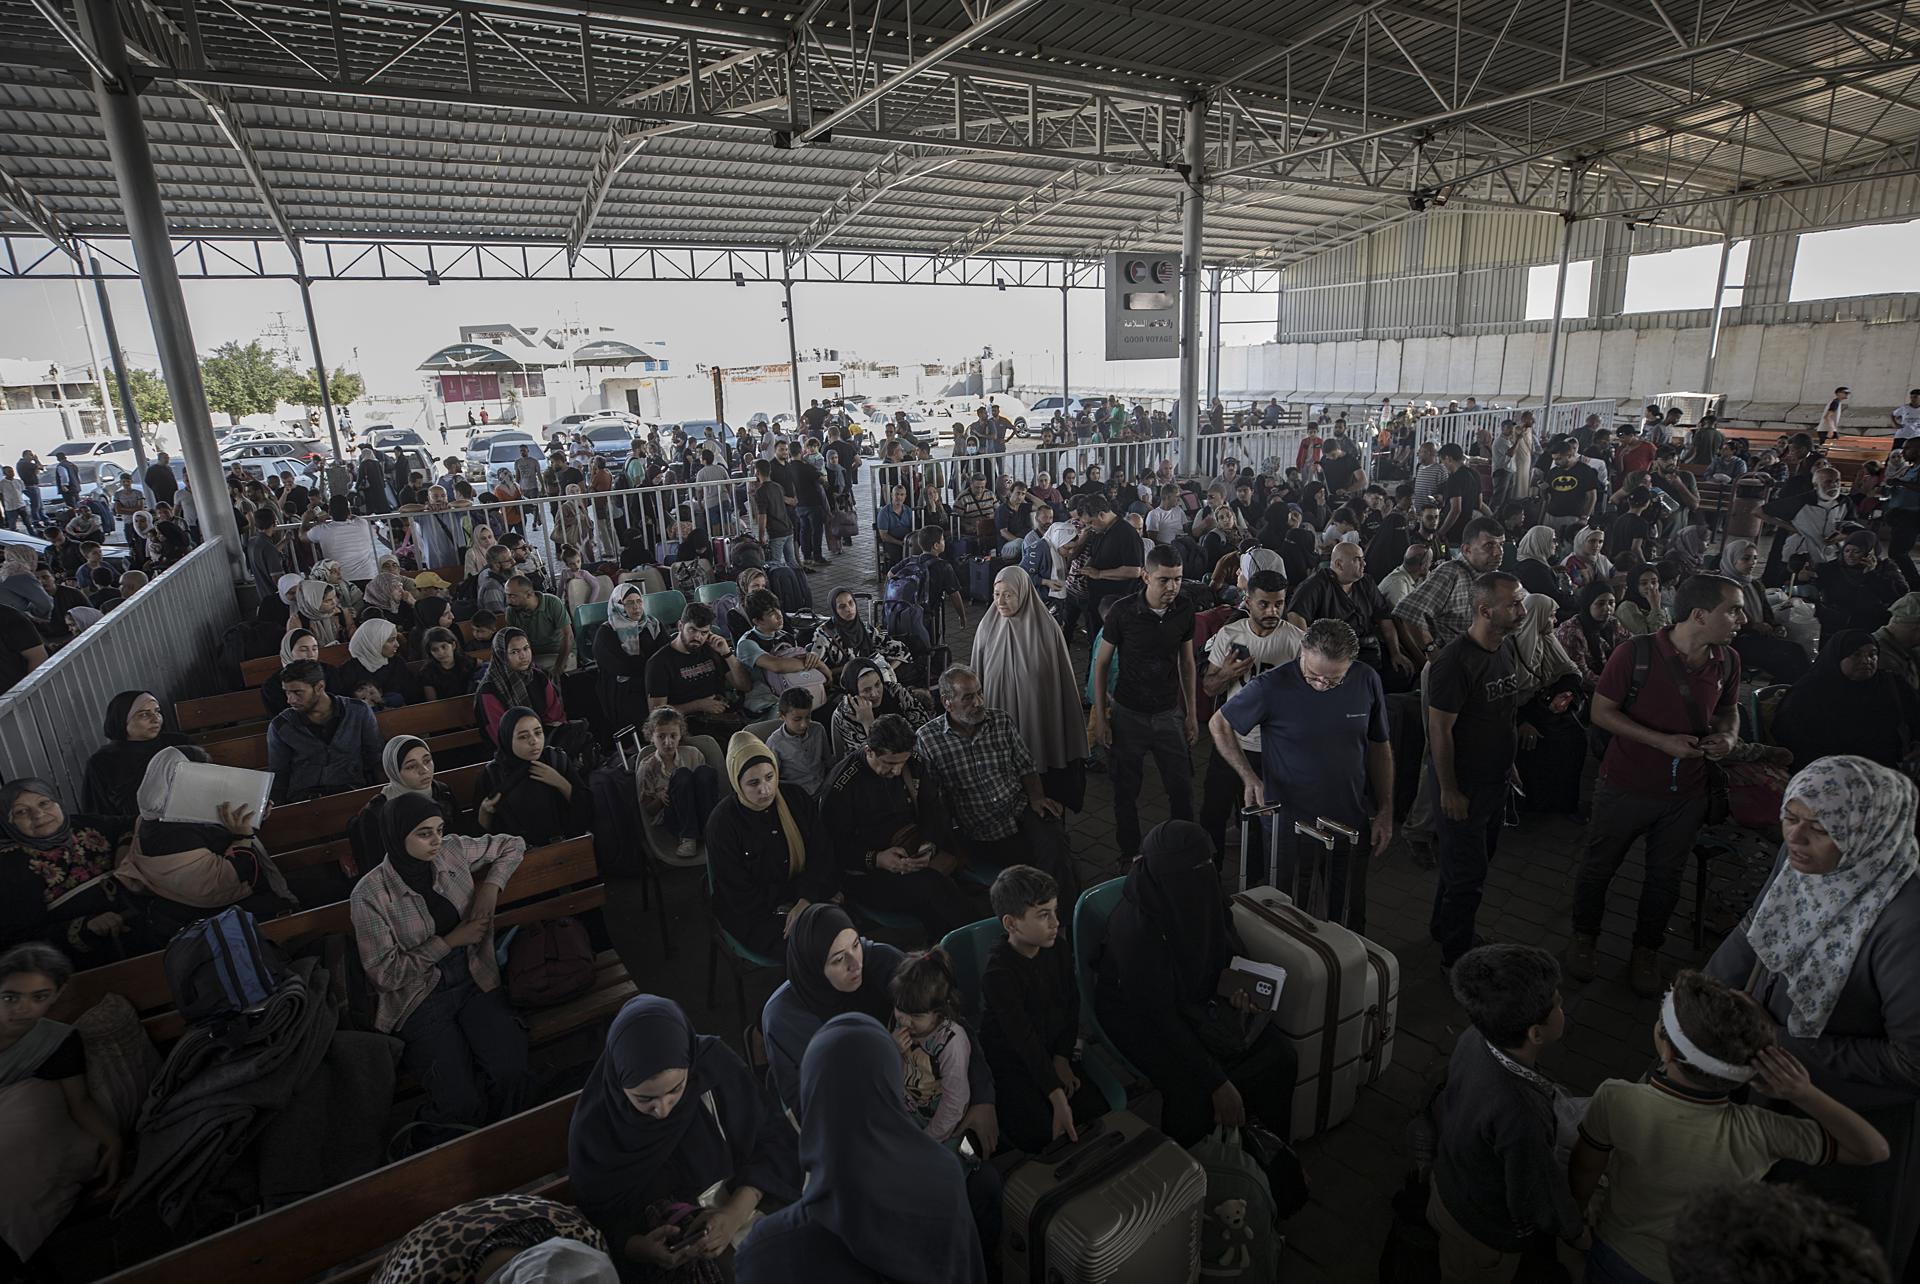 Cientos de ciudadanos palestinos esperan para cruzar a Egipto este miércoles, en el cruce fronterizo de Rafah entre la Franja de Gaza y Egipto. Foto: EFE.